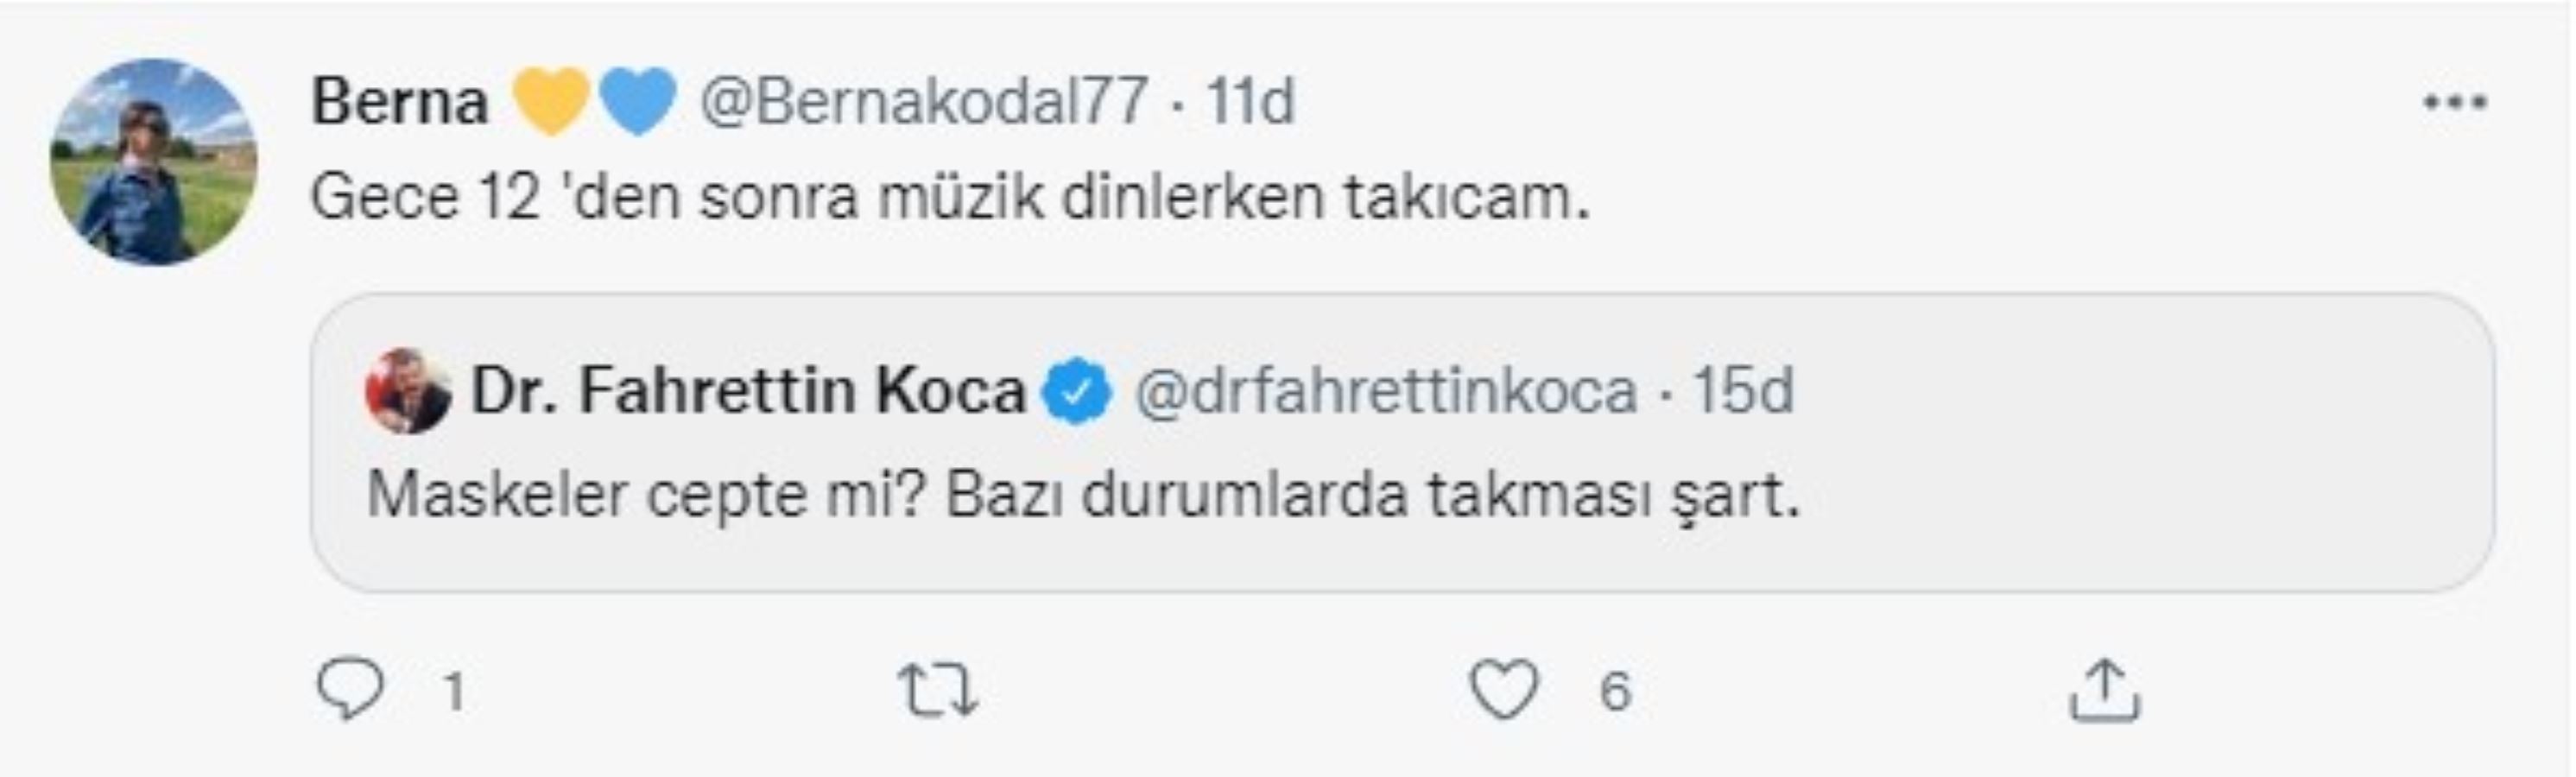 Bakan Koca'nın maske paylaşımı sosyal medyanın gündemine oturdu: 'Fake hesap sandım'